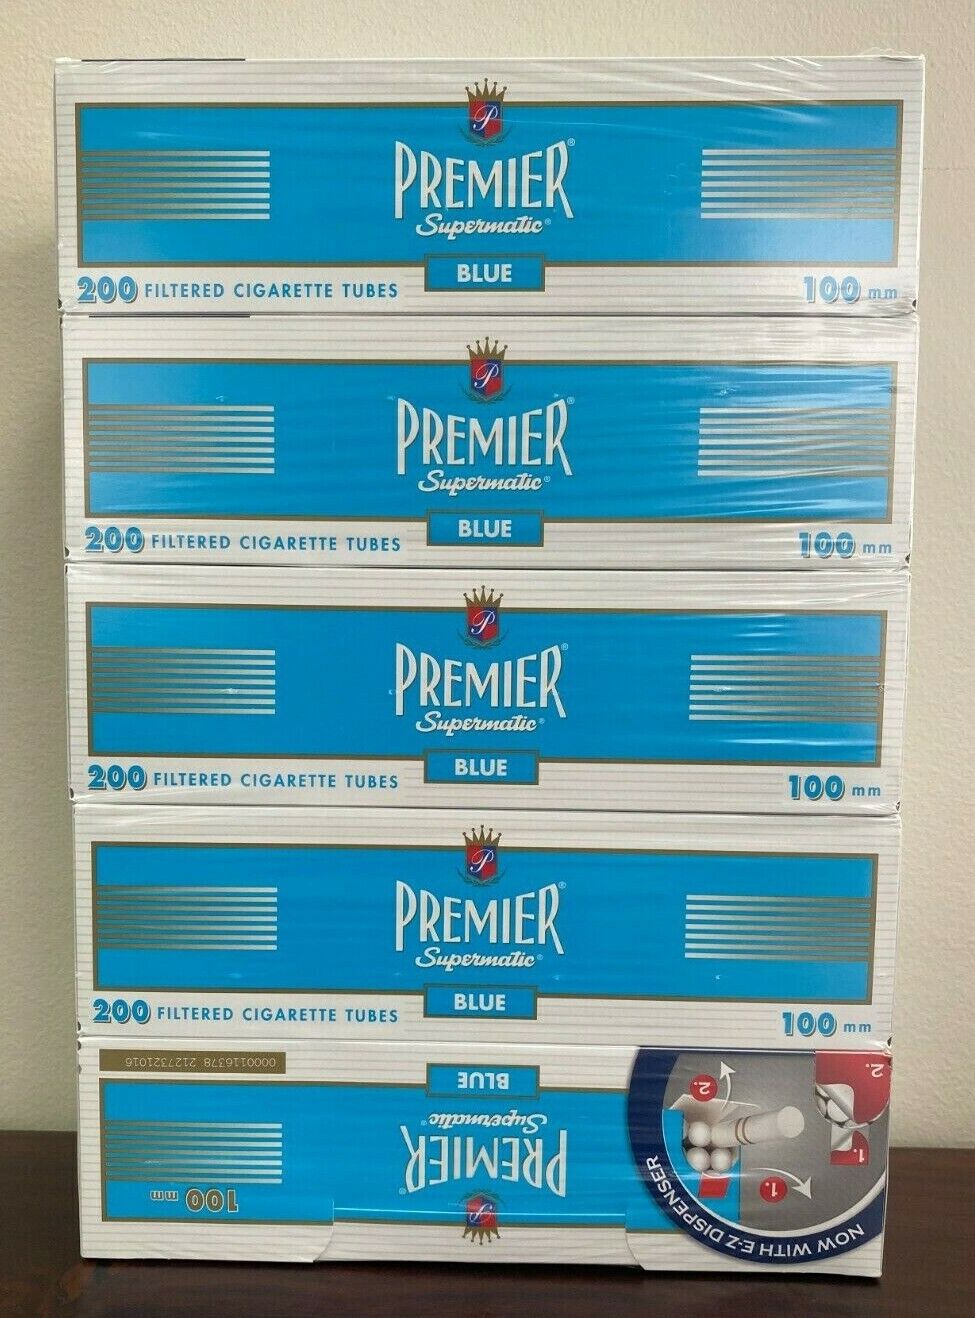 Premier Supermatic Blue (Light) - 100mm Cigarette Tubes 5-Boxes